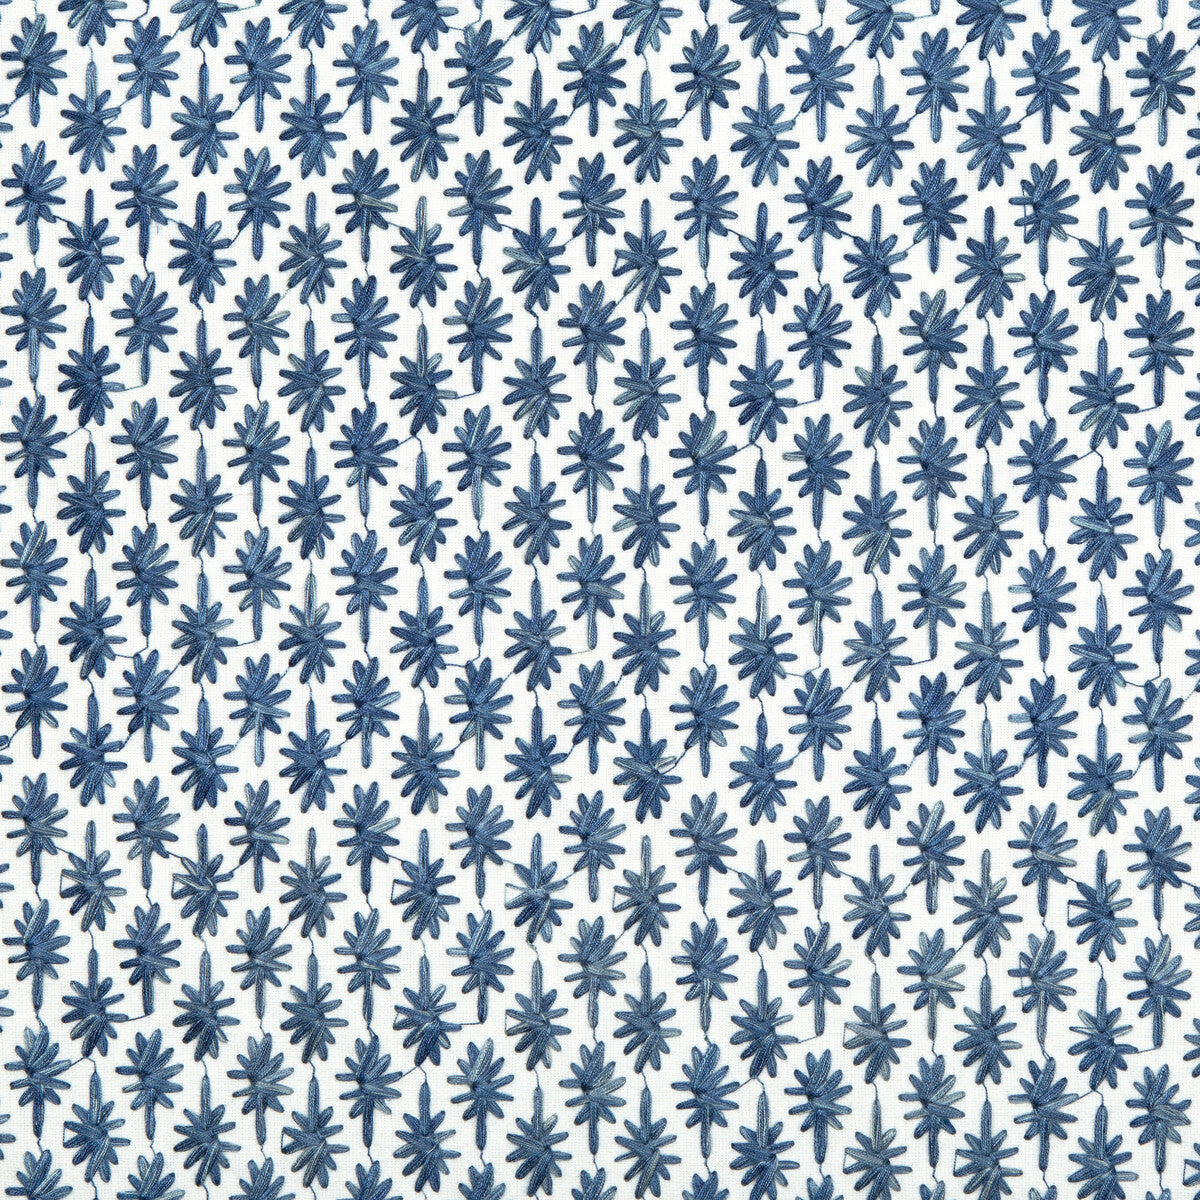 Kravet Basics fabric in 36132-51 color - pattern 36132.51.0 - by Kravet Basics